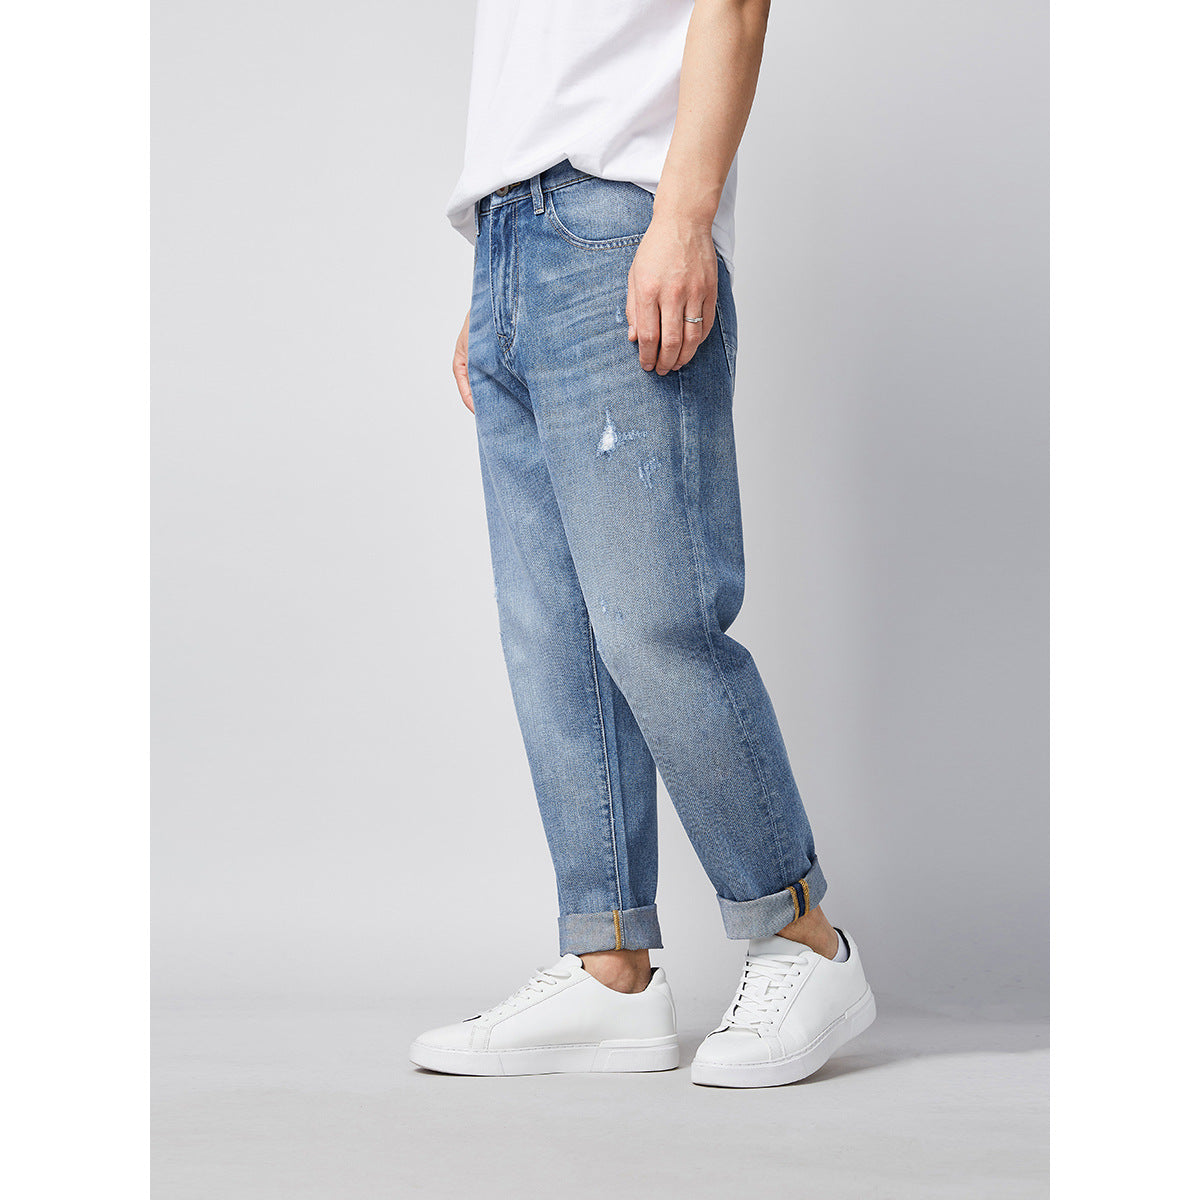 Jeans Men'S Casual Pants